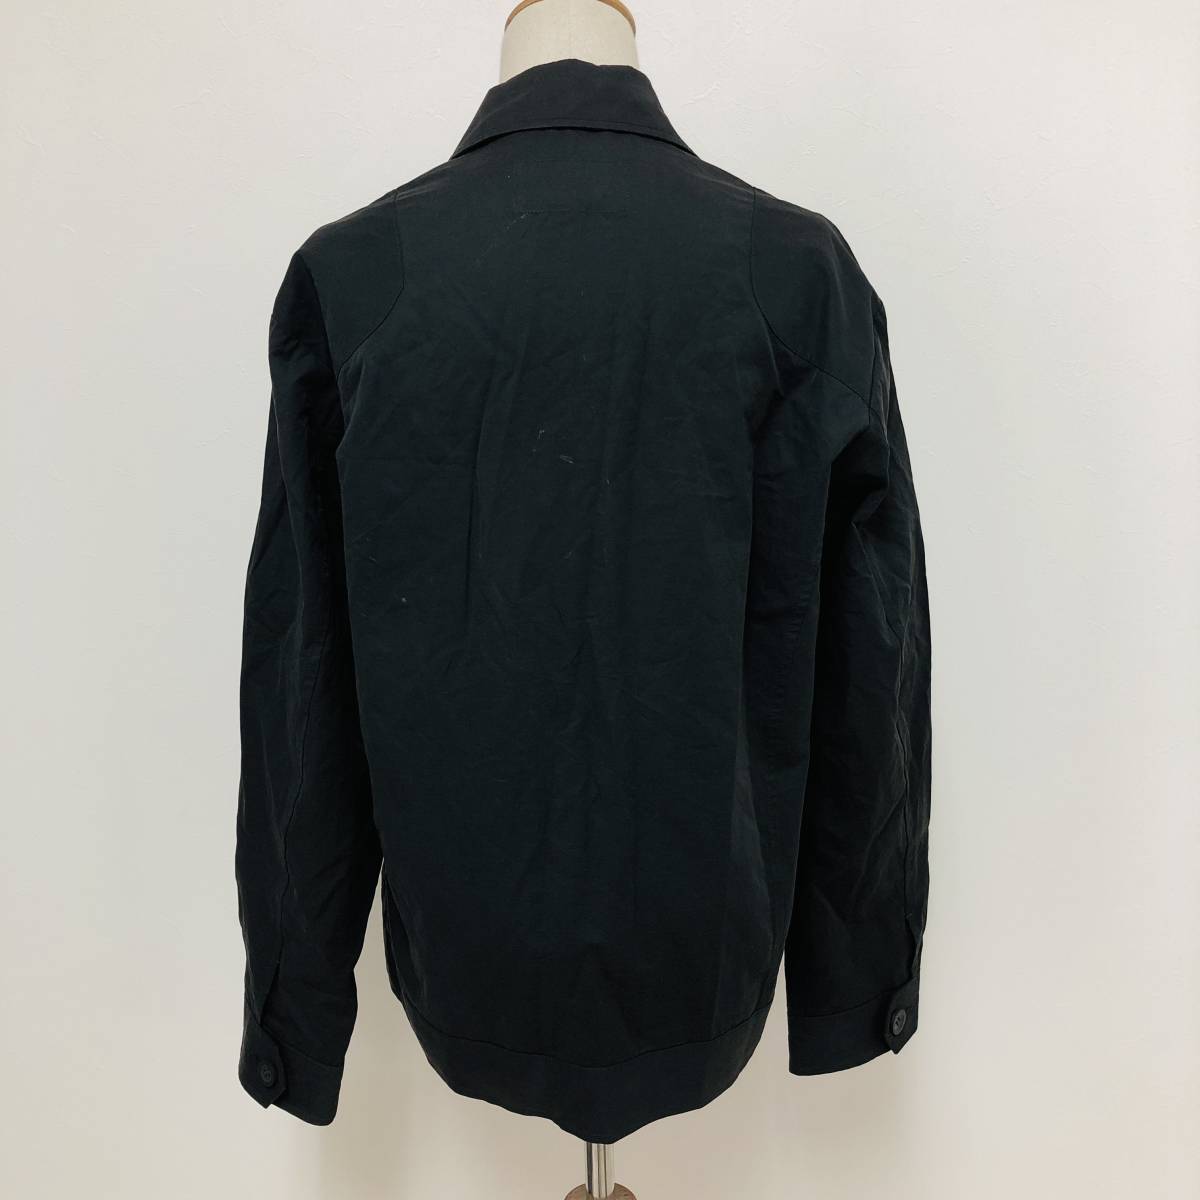 k3001 CHRY BONNE クライスボン シャツジャケット 綿混 ポケット M 黒 無地 メンズ シンプル シック 上品 ベーシックカジュアルスタイル _画像3